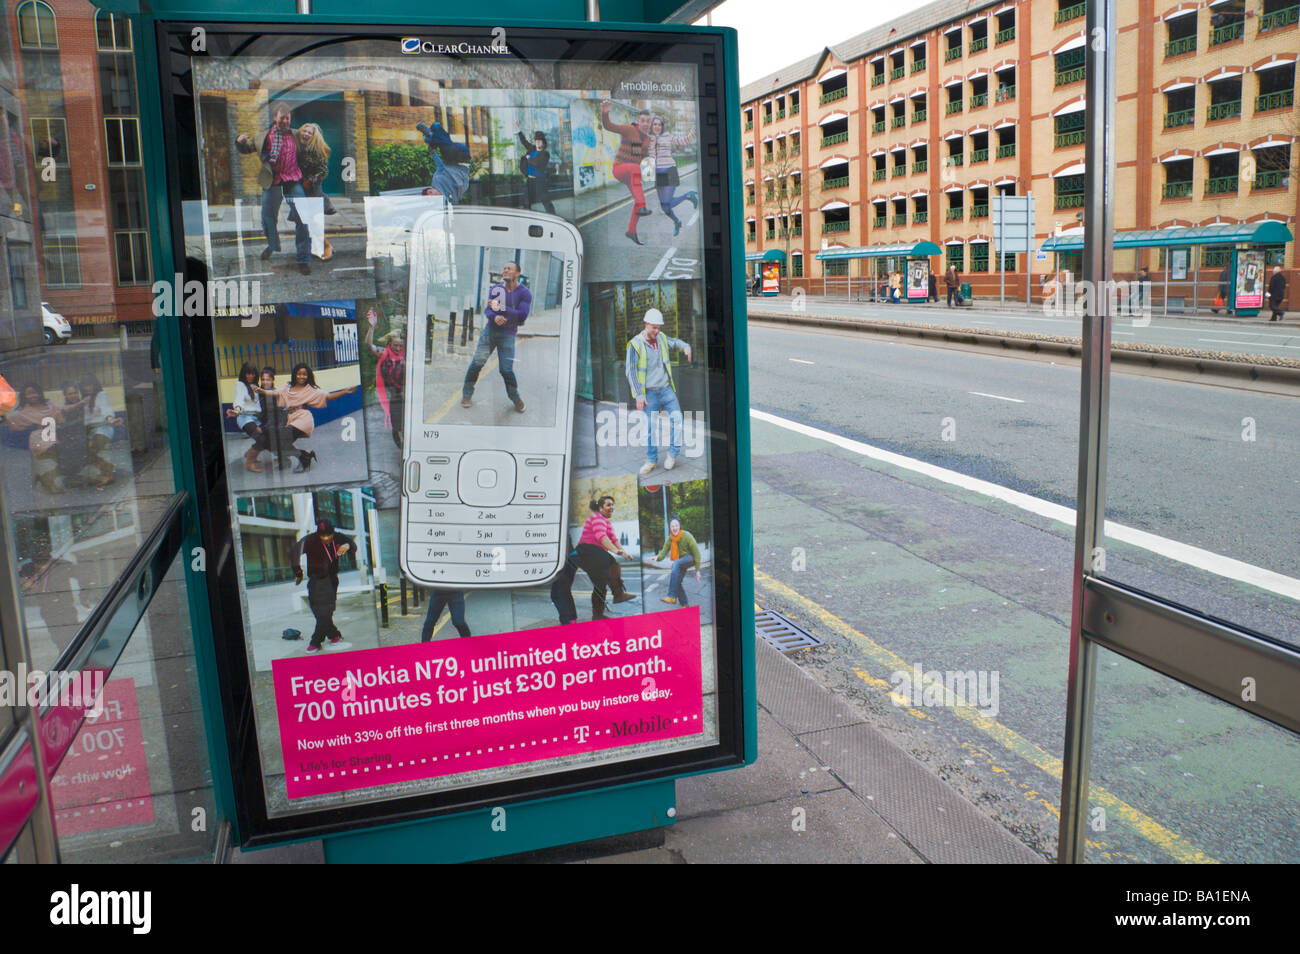 Panneau publicitaire ClearChannel pour T Mobile Nokia N79 téléphone mobile à bus à Cardiff South Wales UK Banque D'Images